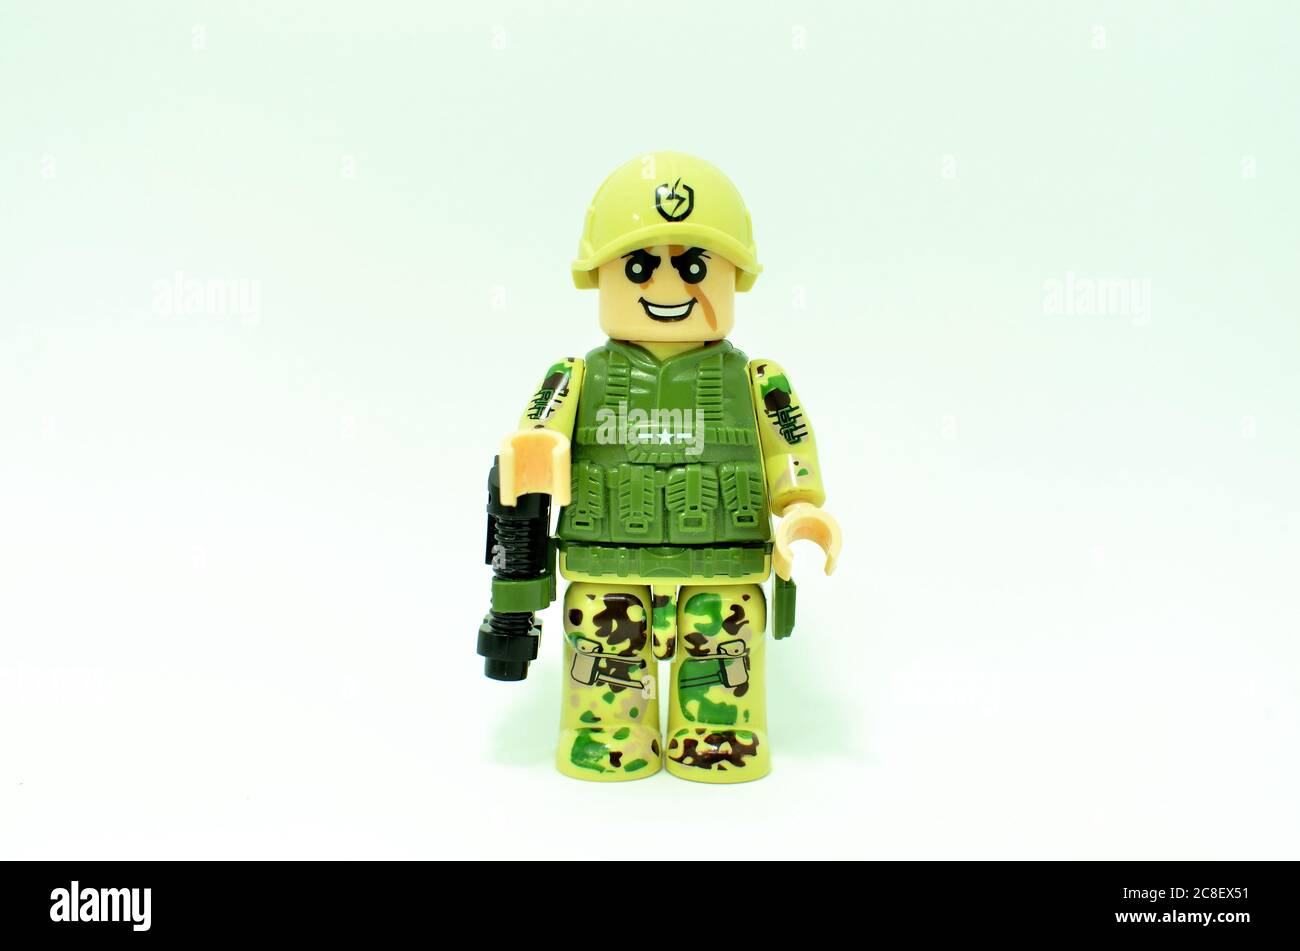 Armeekonzept, Special Forces / SAS, vertreten durch kleine Spielzeugsoldaten Stockfoto